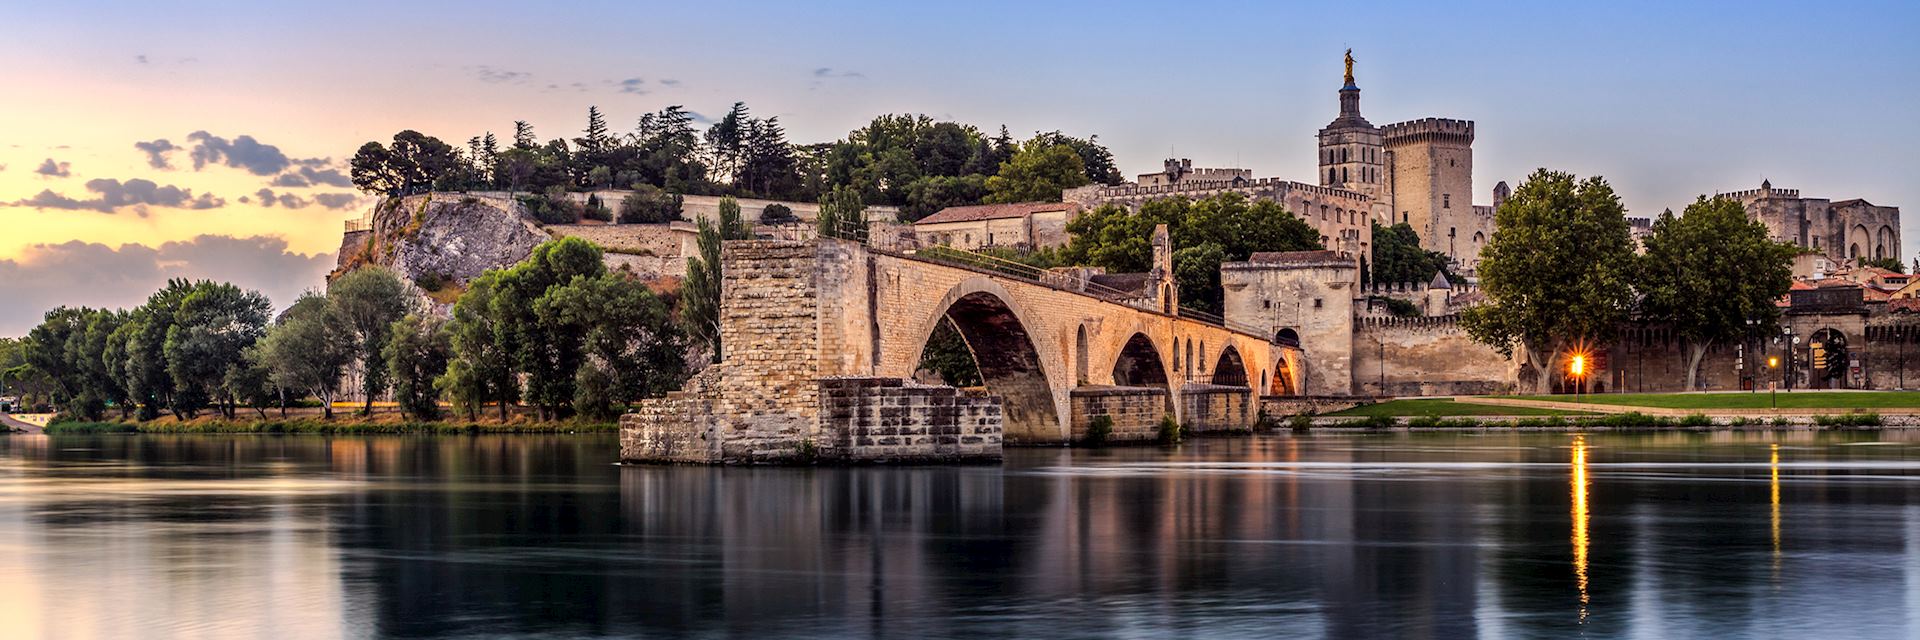 Pont Saint-Benezet at sunrise, Avignon